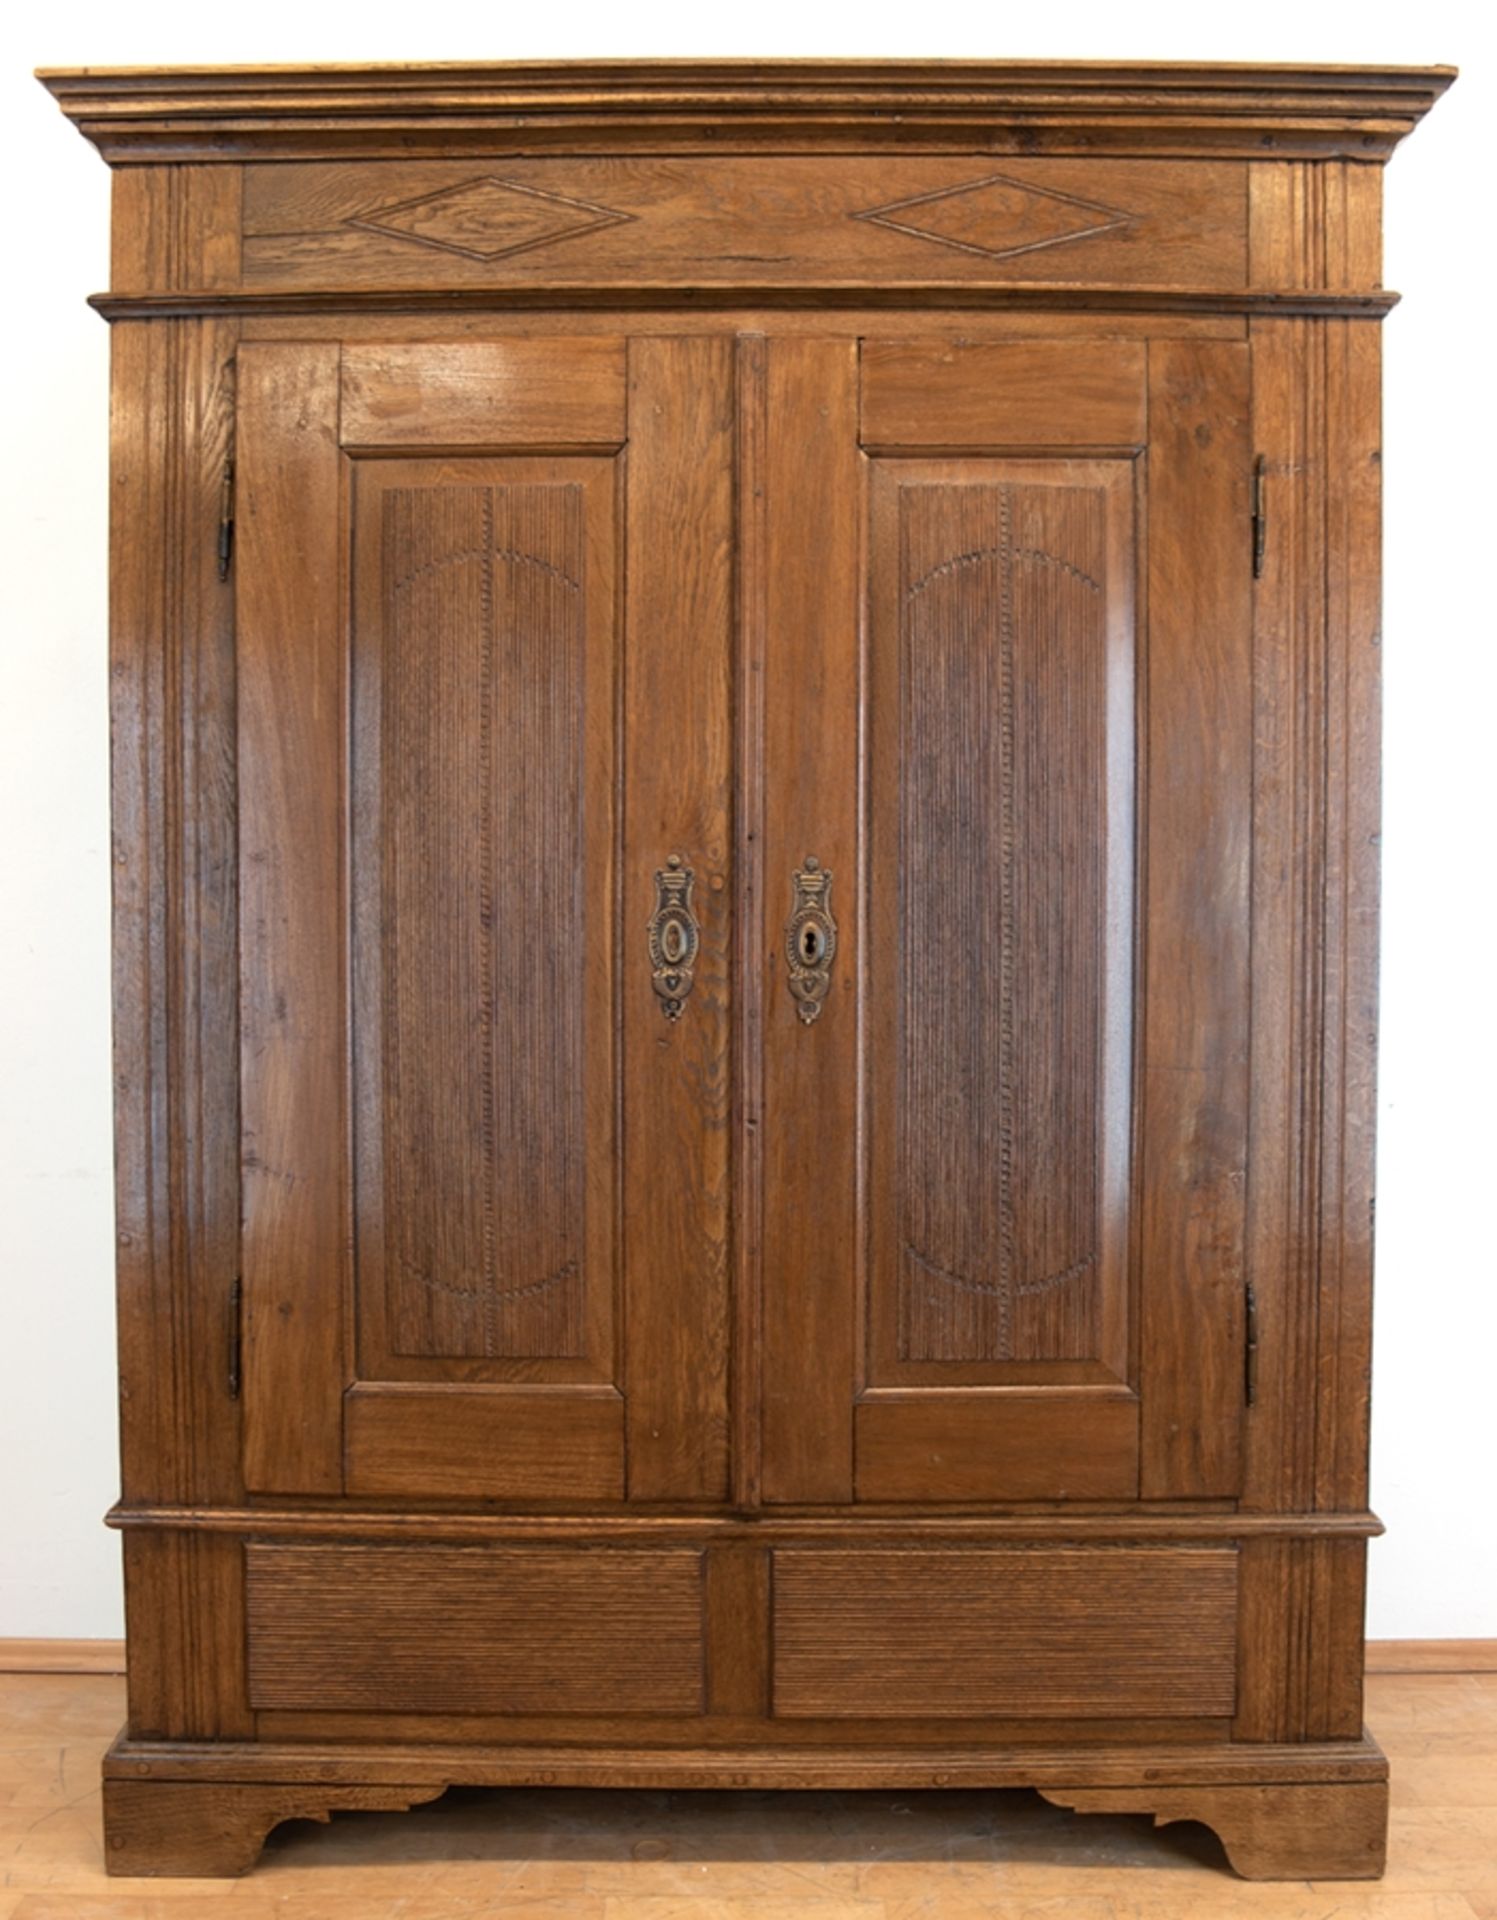 Louis-Seize-Schrank, um 1800, massiv Eiche, nicht zerlegbar, 2 Türen mit Rillenprofil, innen Kleide